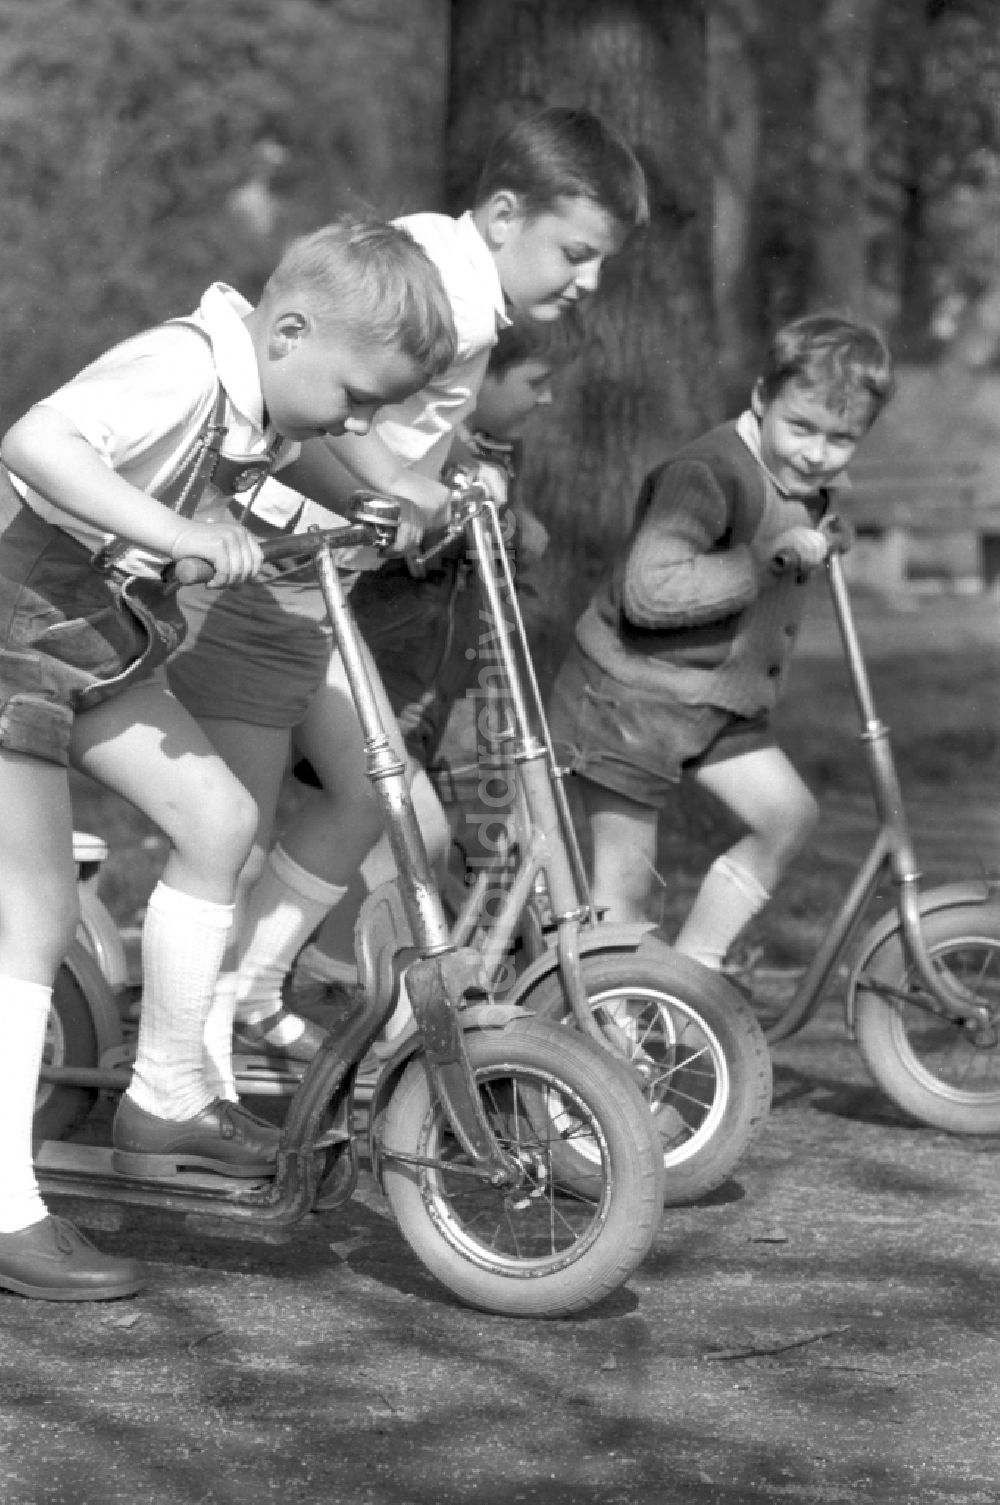 Dessau: 4 Jungen mit ihren Rollern im Stadtpark Dessau in Sachsen - Anhalt